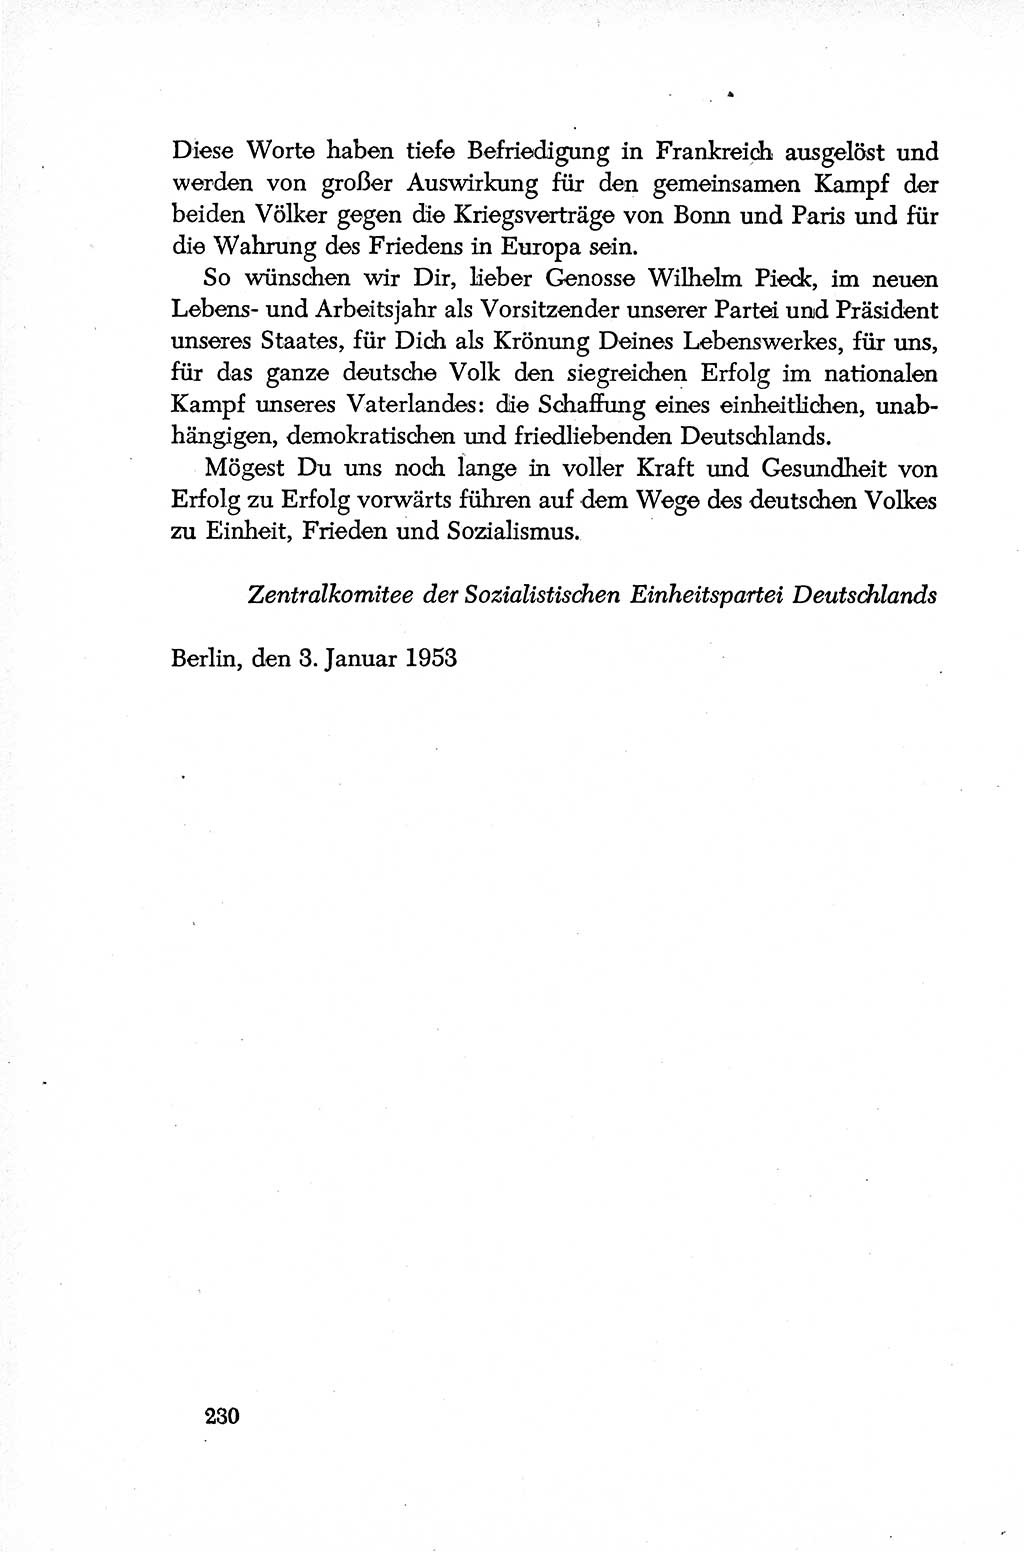 Dokumente der Sozialistischen Einheitspartei Deutschlands (SED) [Deutsche Demokratische Republik (DDR)] 1952-1953, Seite 230 (Dok. SED DDR 1952-1953, S. 230)